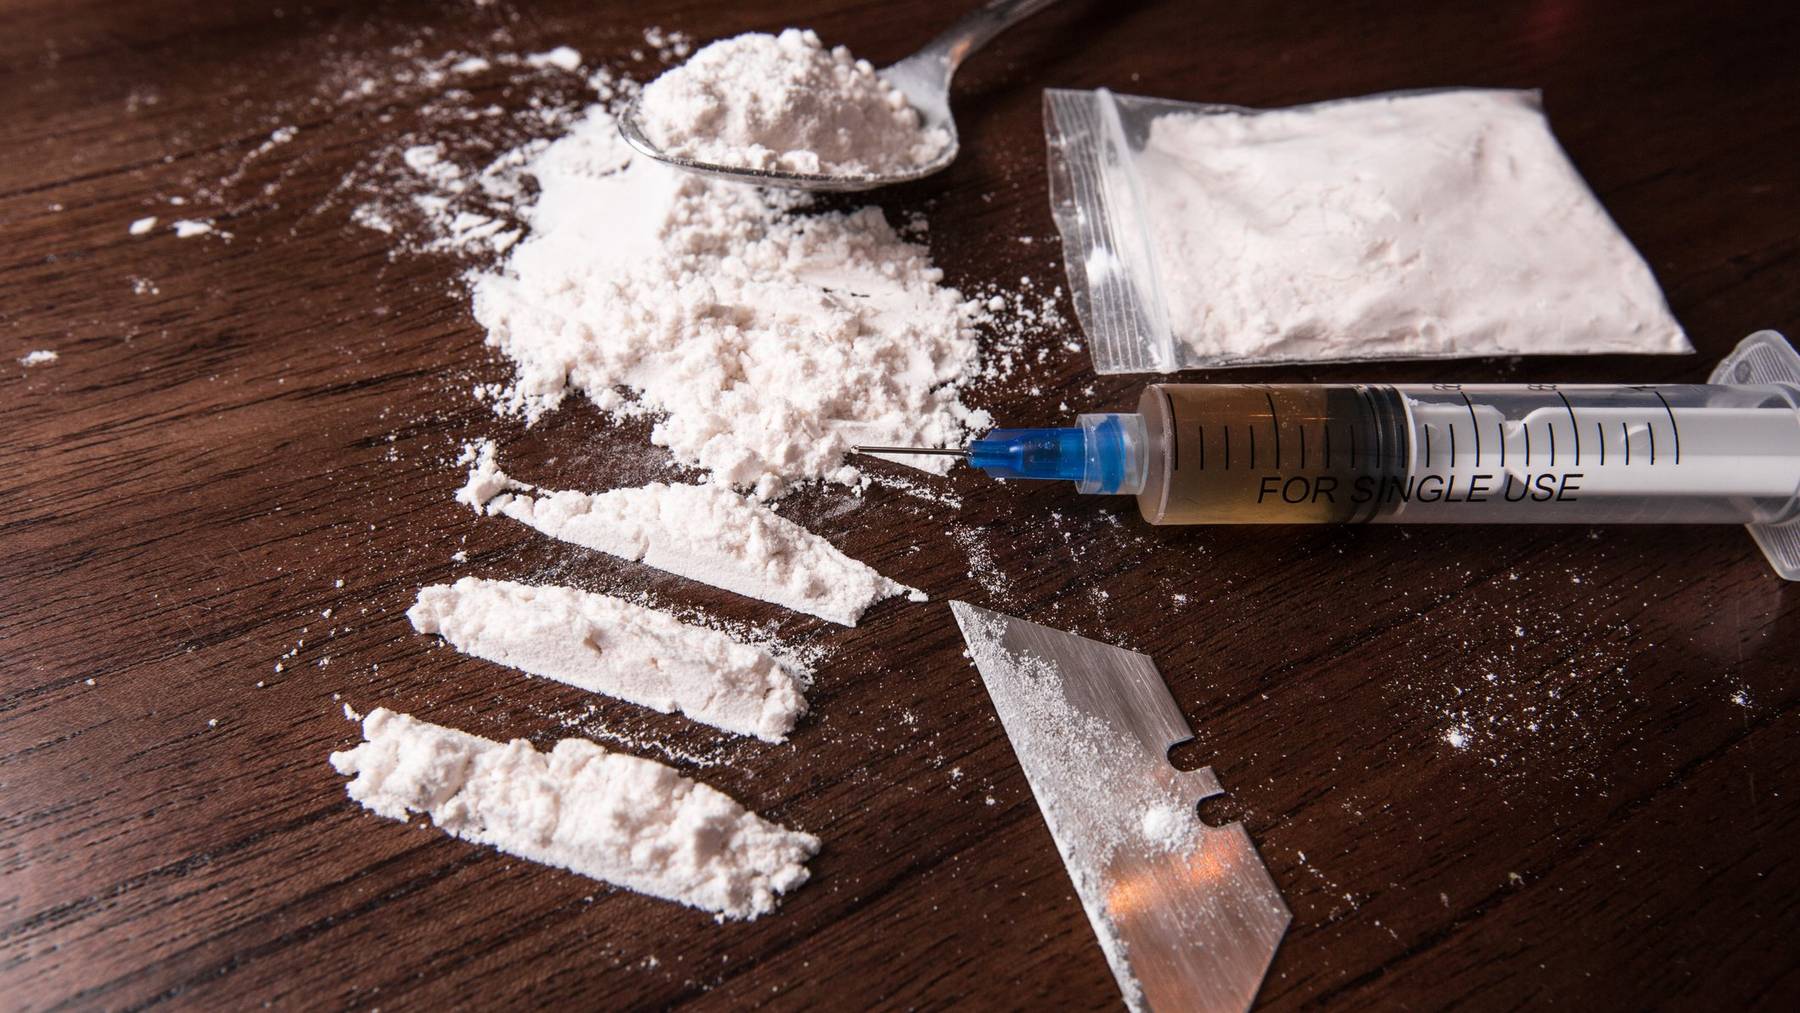 Über 24 Kilogramm Kokain wurden sichergestellt. (Symbolbild)